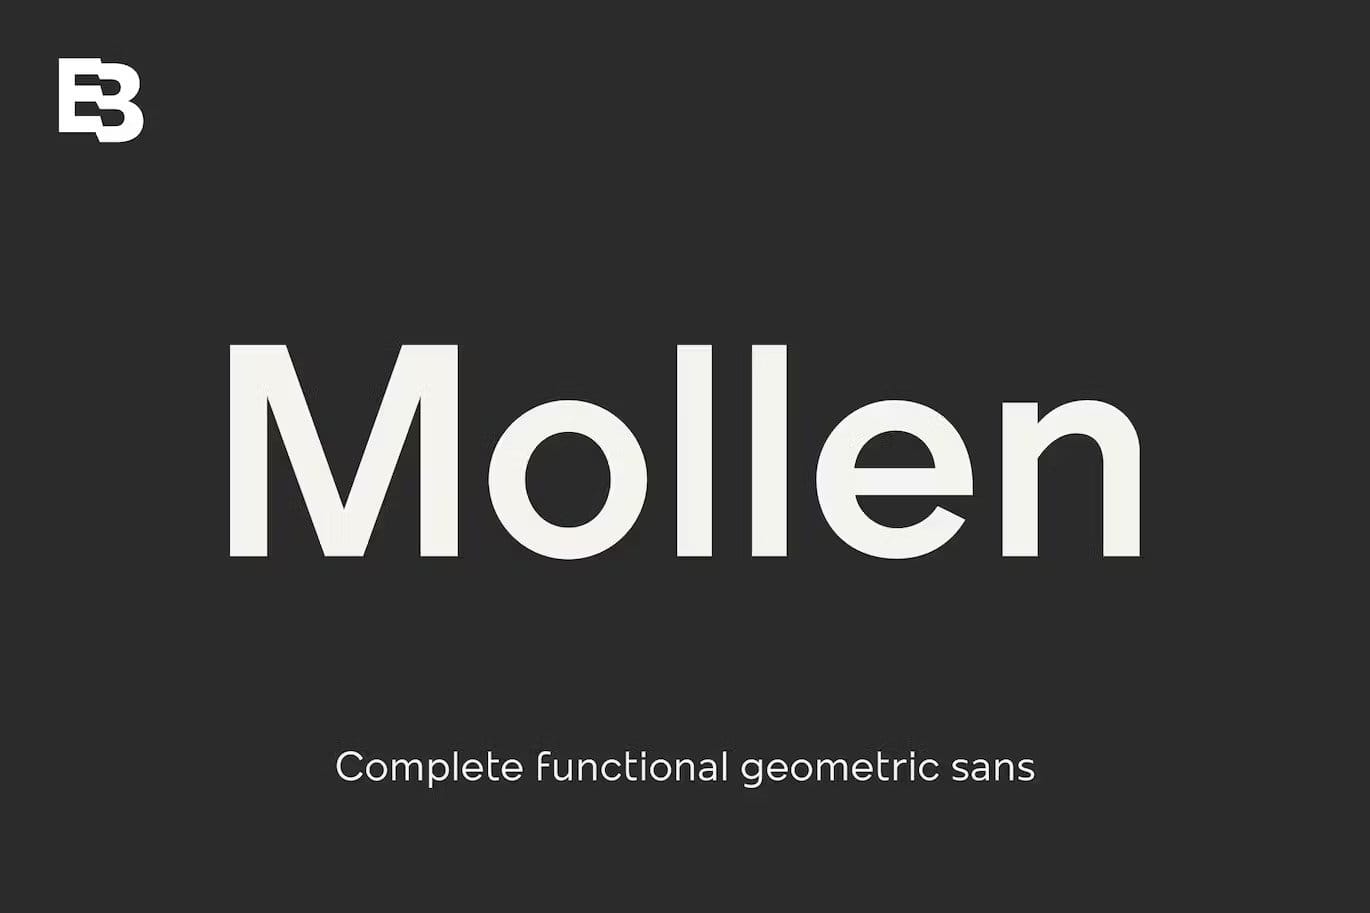 A modern geometric sans serif font